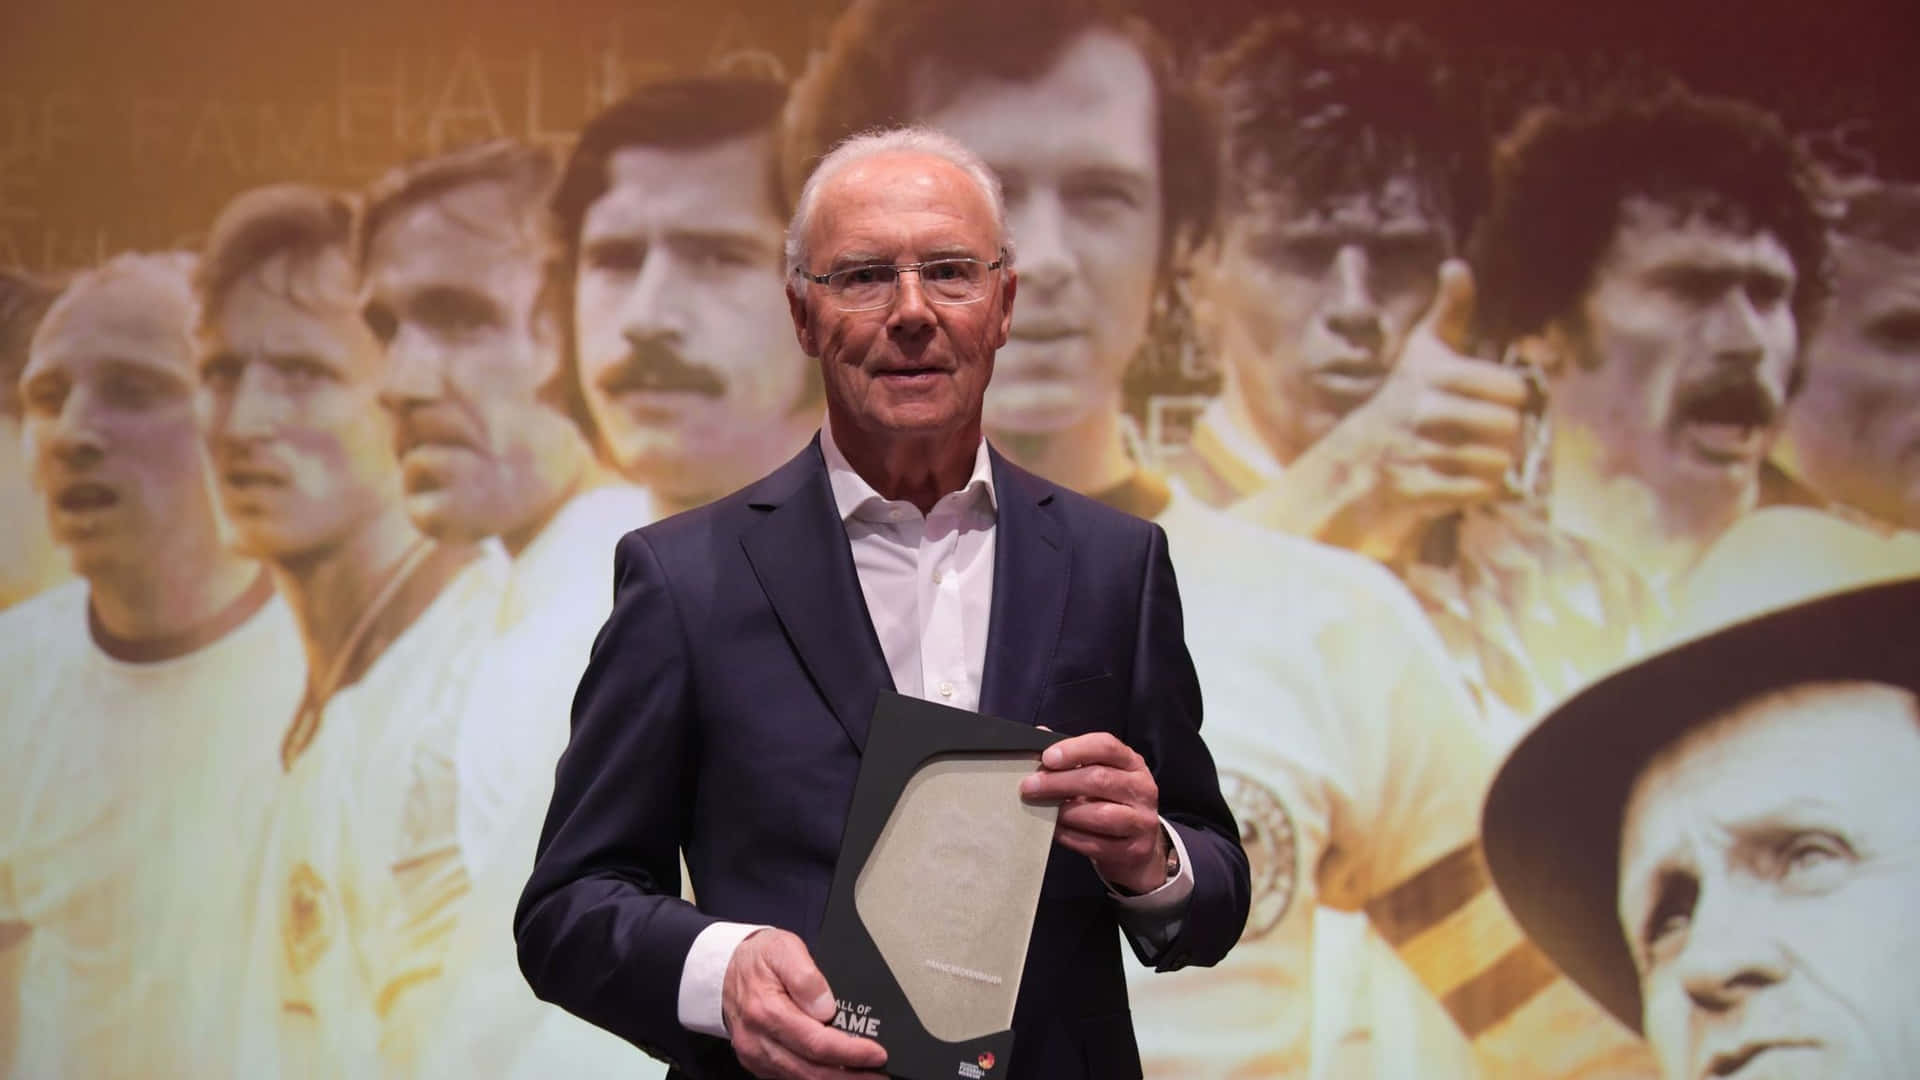 Franz Beckenbauer Team Manager Wallpaper